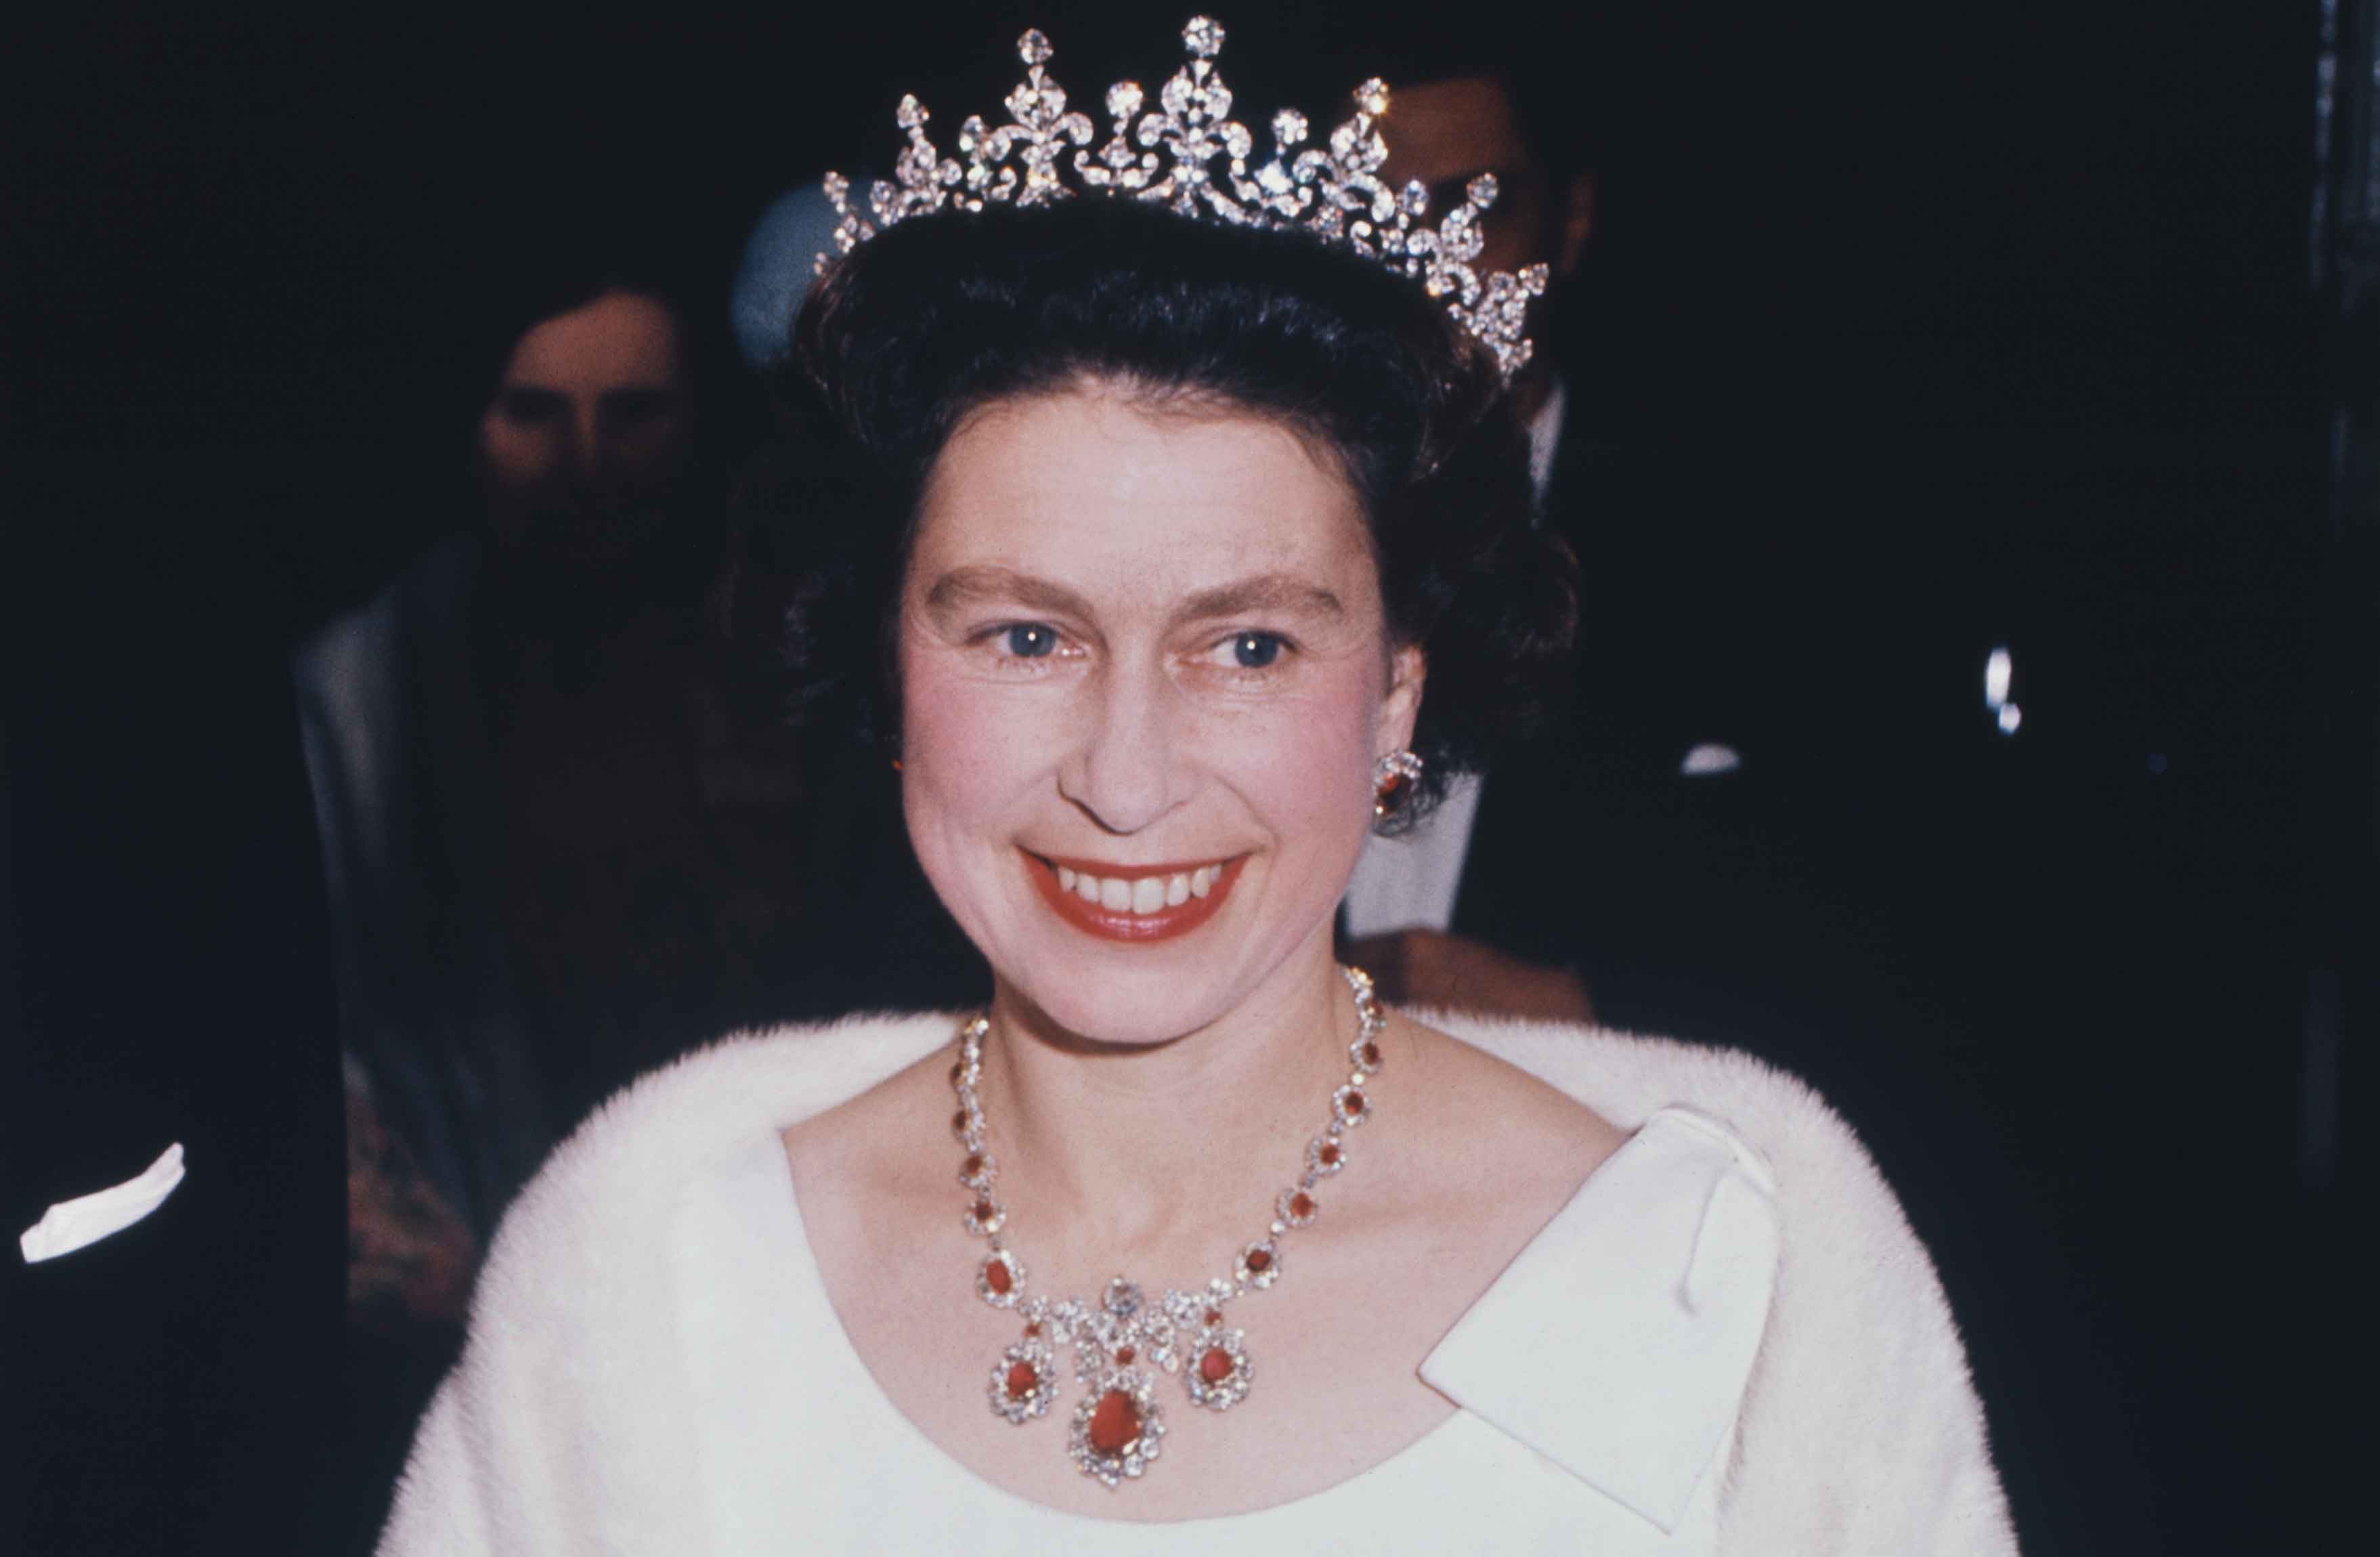 El discurso de la reina Elizabeth II que ha inspirado al mundo entero